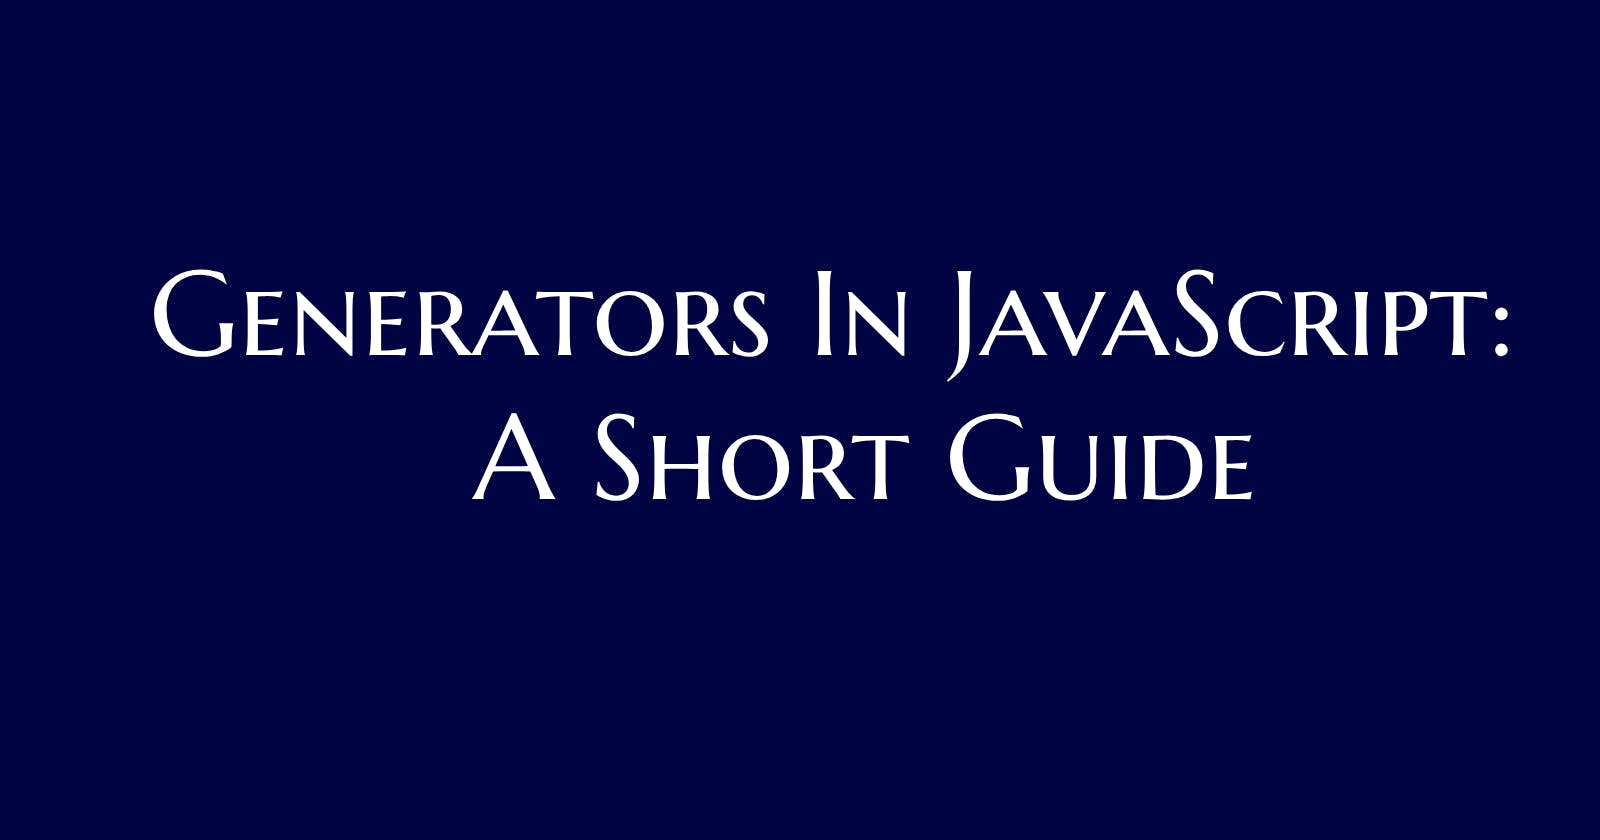 Generators in JavaScript: A Short Guide